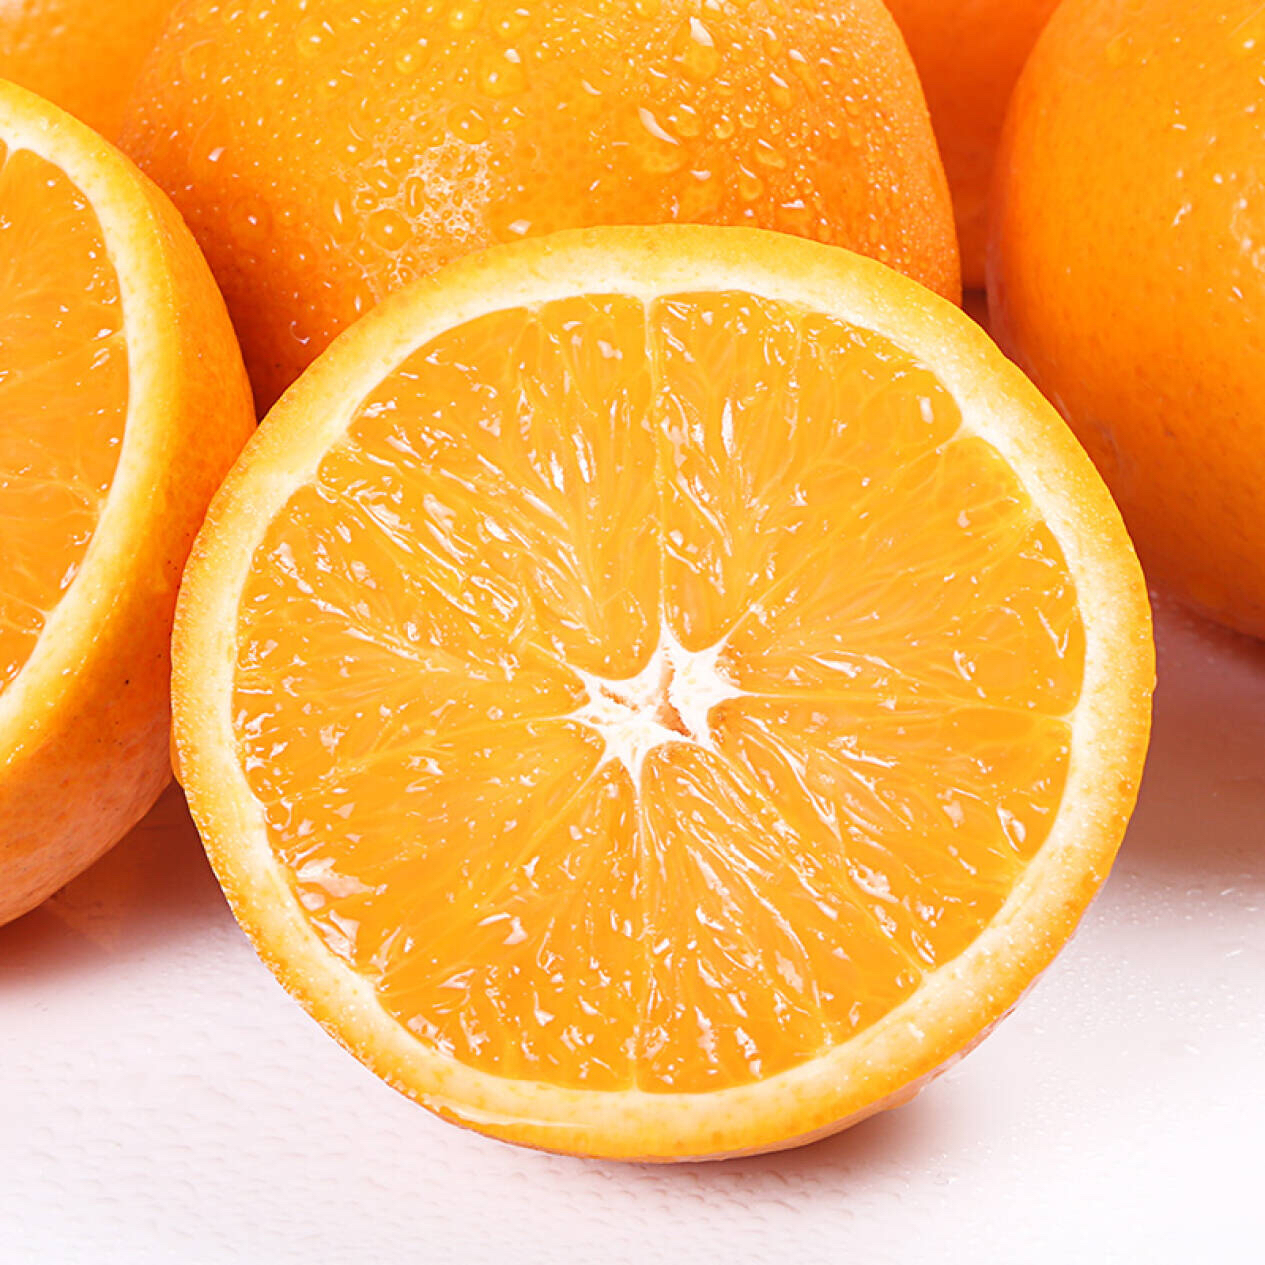 今年砂糖橘市场怎么样_砂糖橘营养成分_深圳 摘砂糖橘